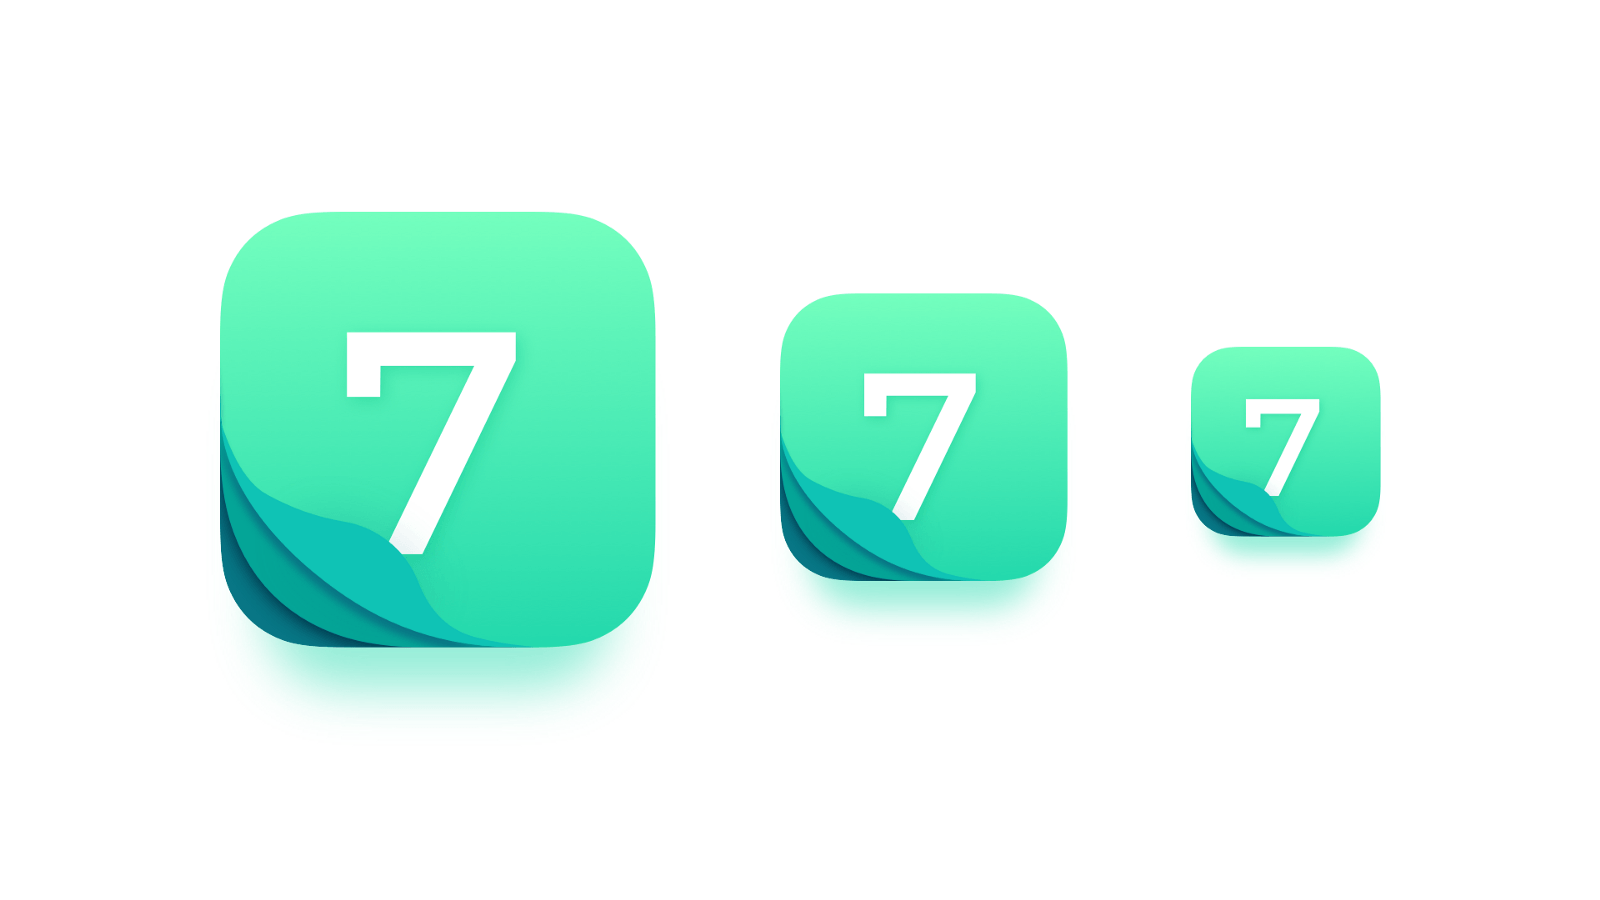 Good App Logo - Handy Tips for Better App Icon Design